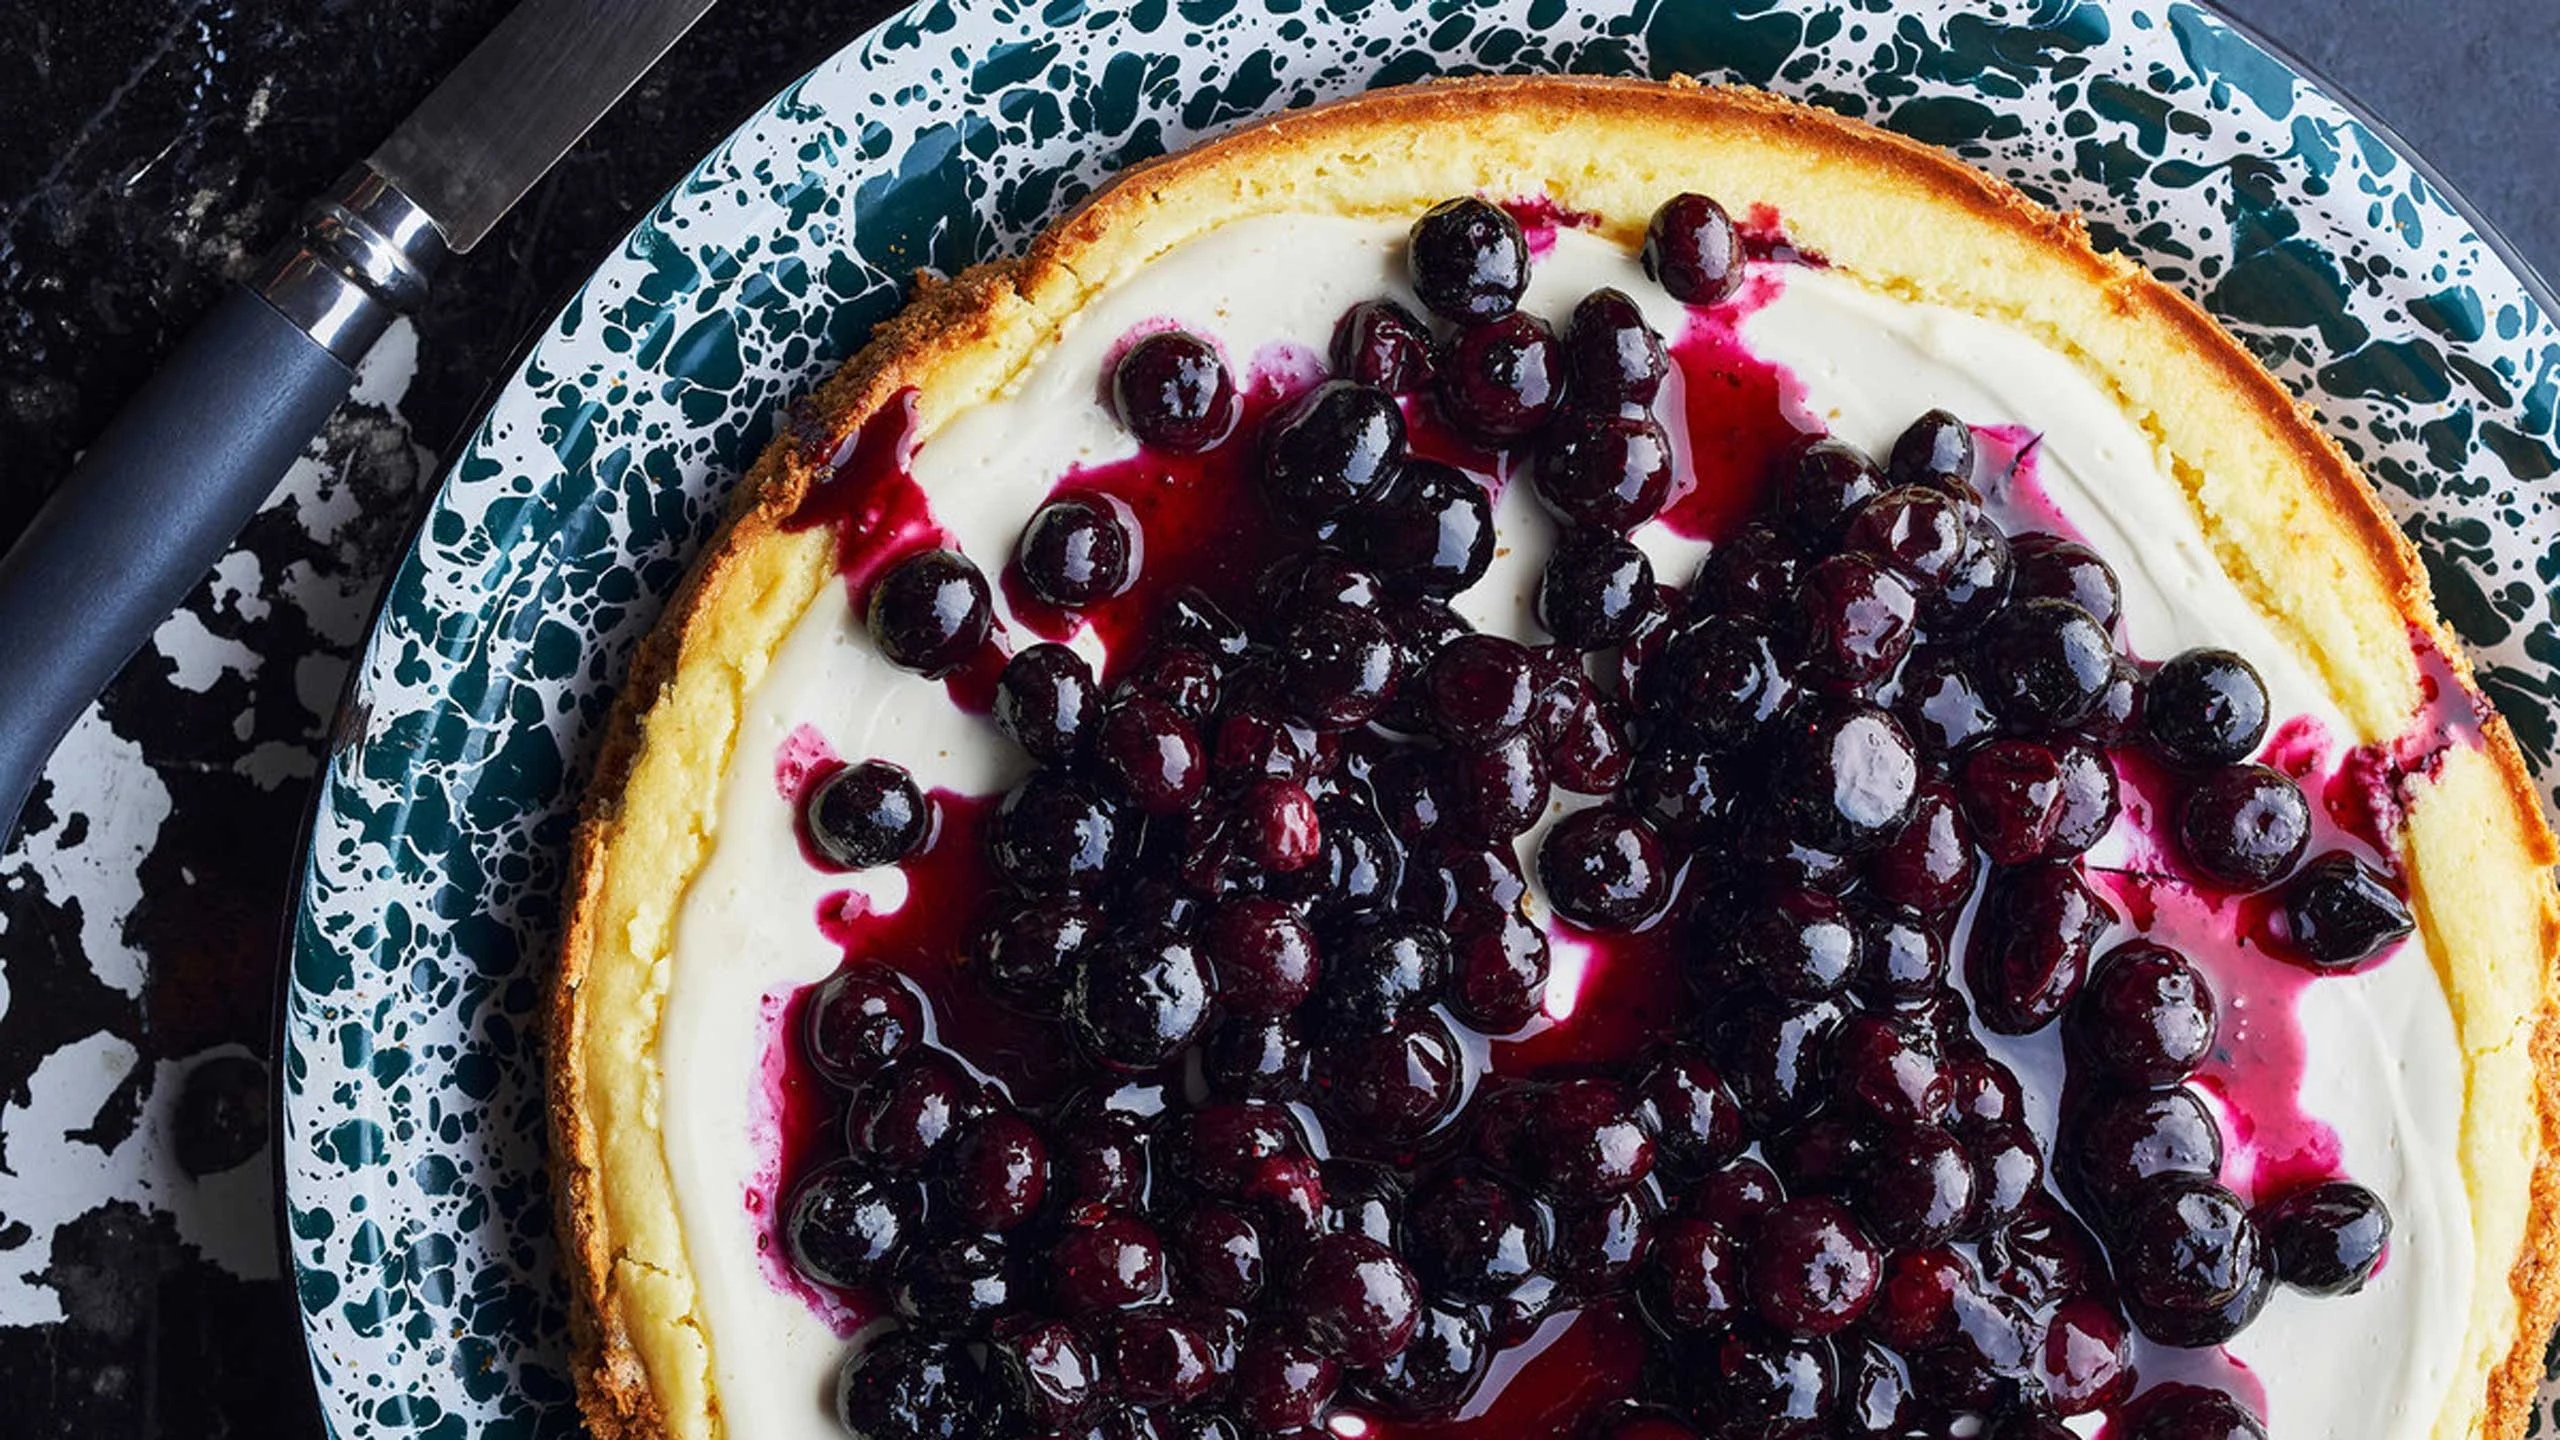 Sigue estos tips para lograr el mejor cheesecake de moras